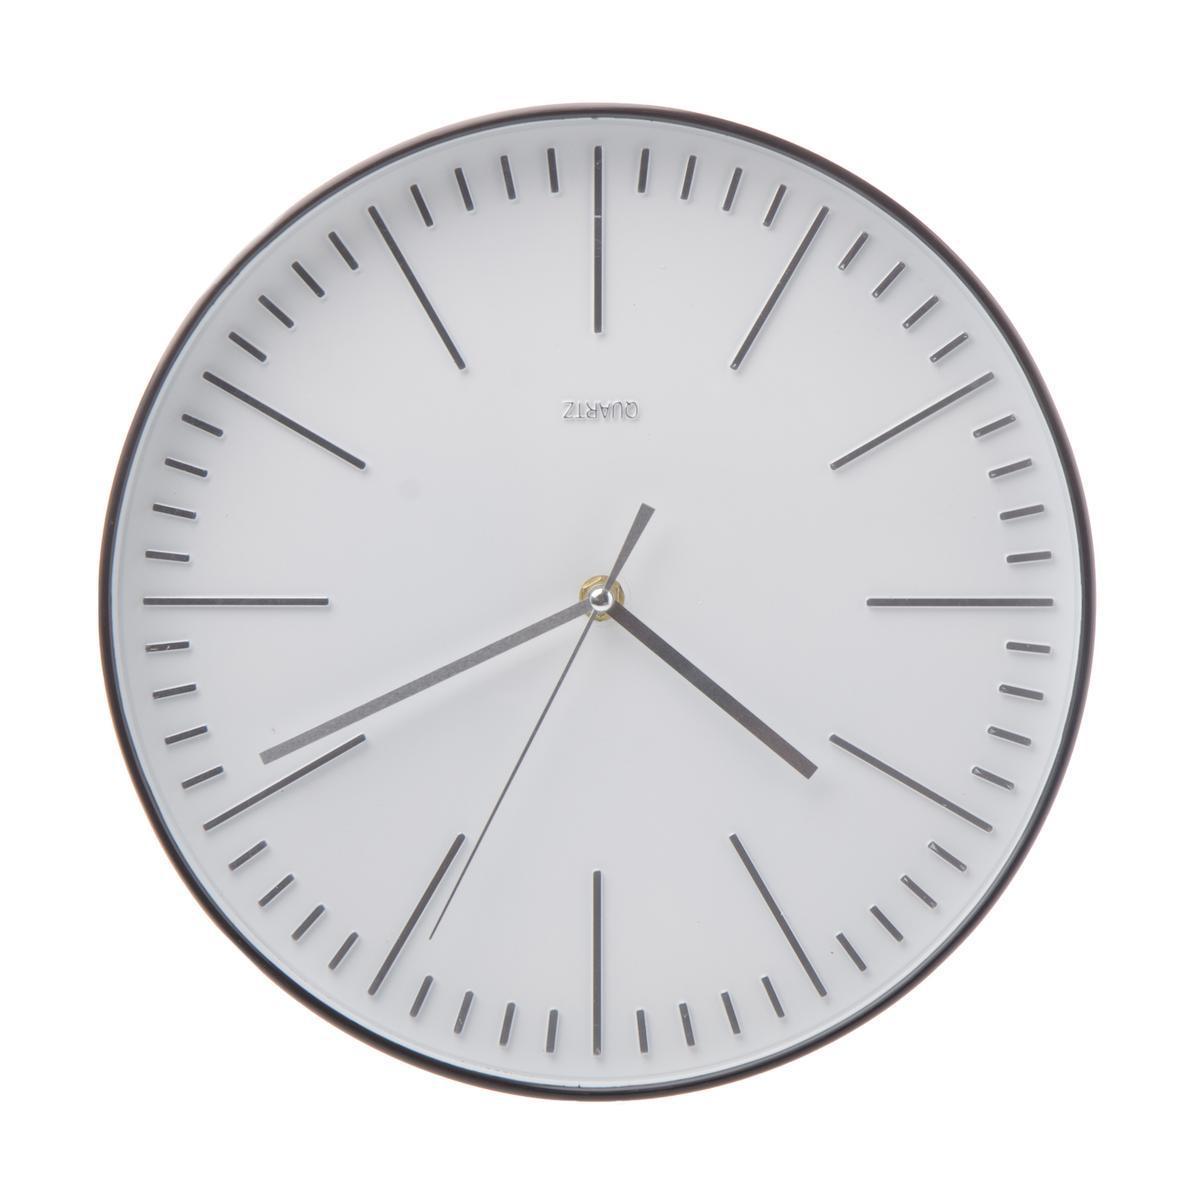 Horloge contemporaine - Plastique - D30 cm - Noir et blanc